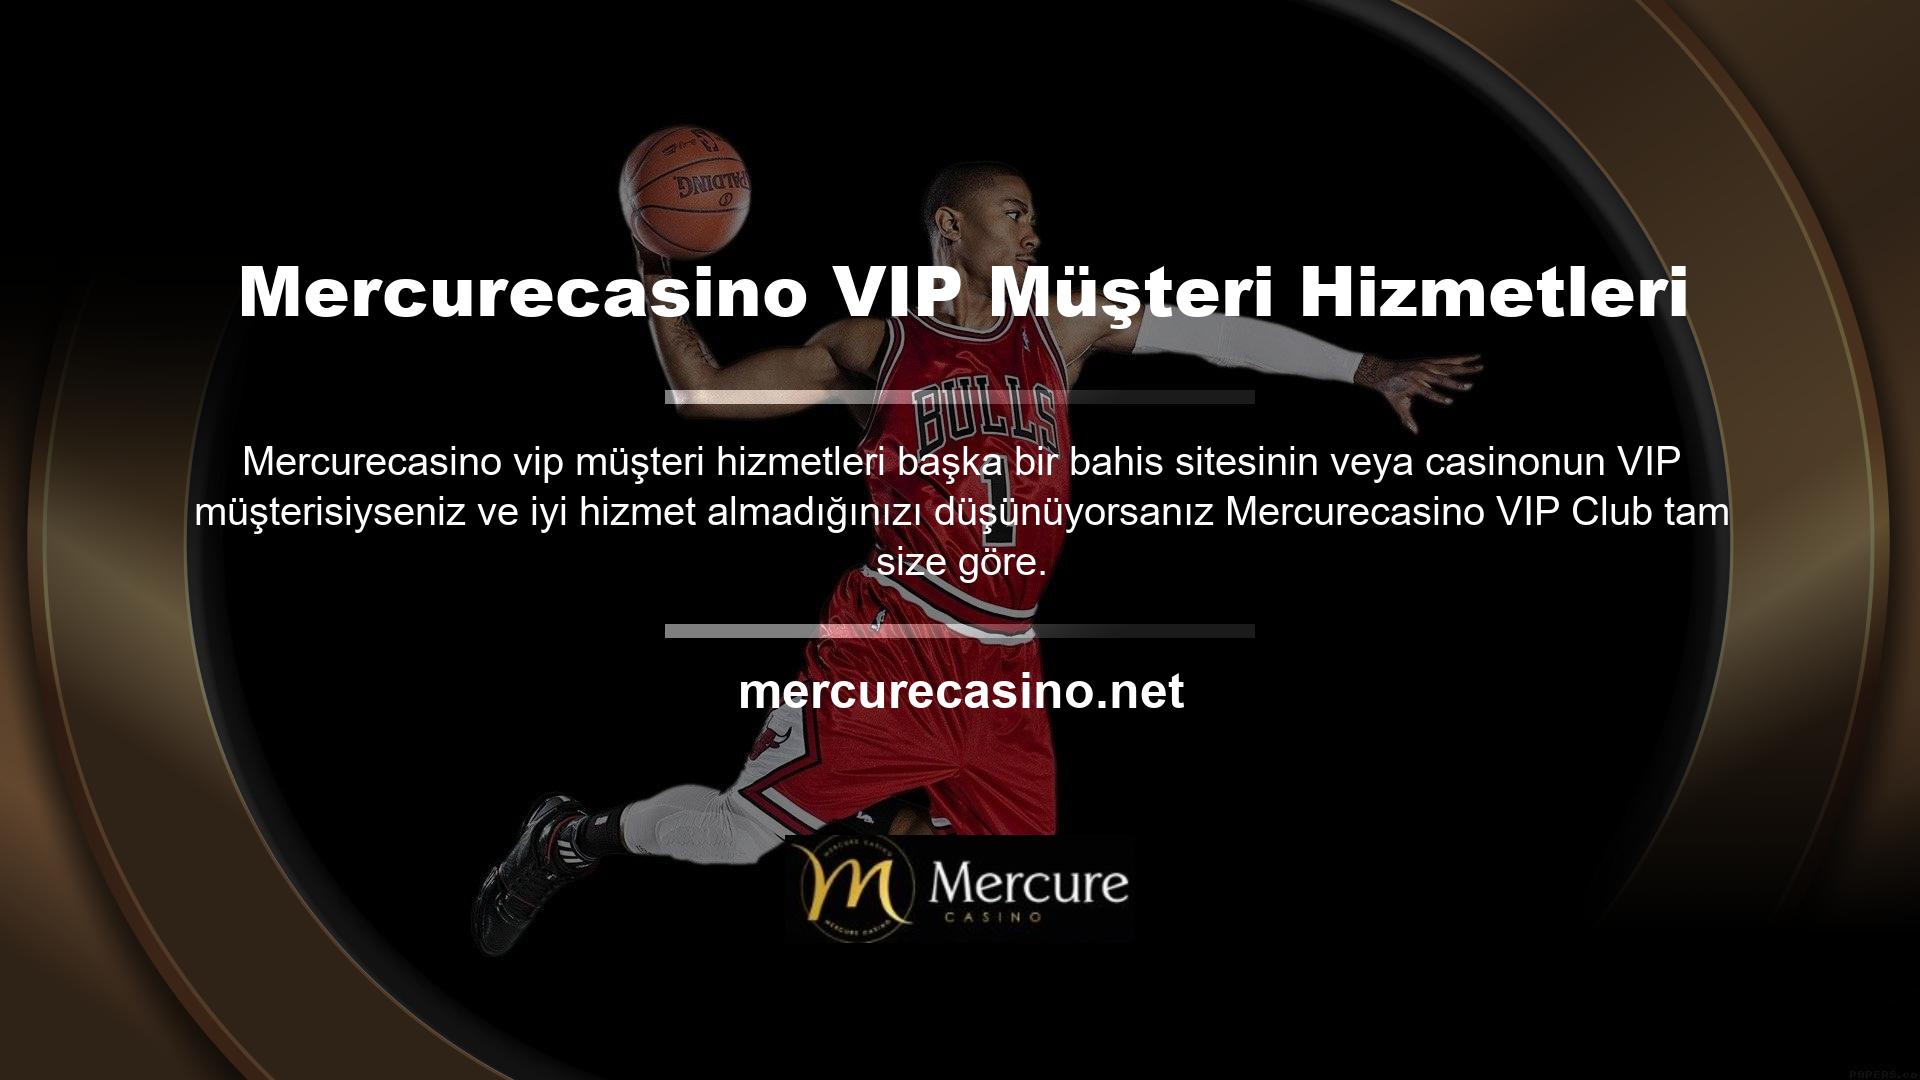 Mercurecasino VIP Hesap Yöneticisi deneyiminizi belirtme hakkına sahipsiniz